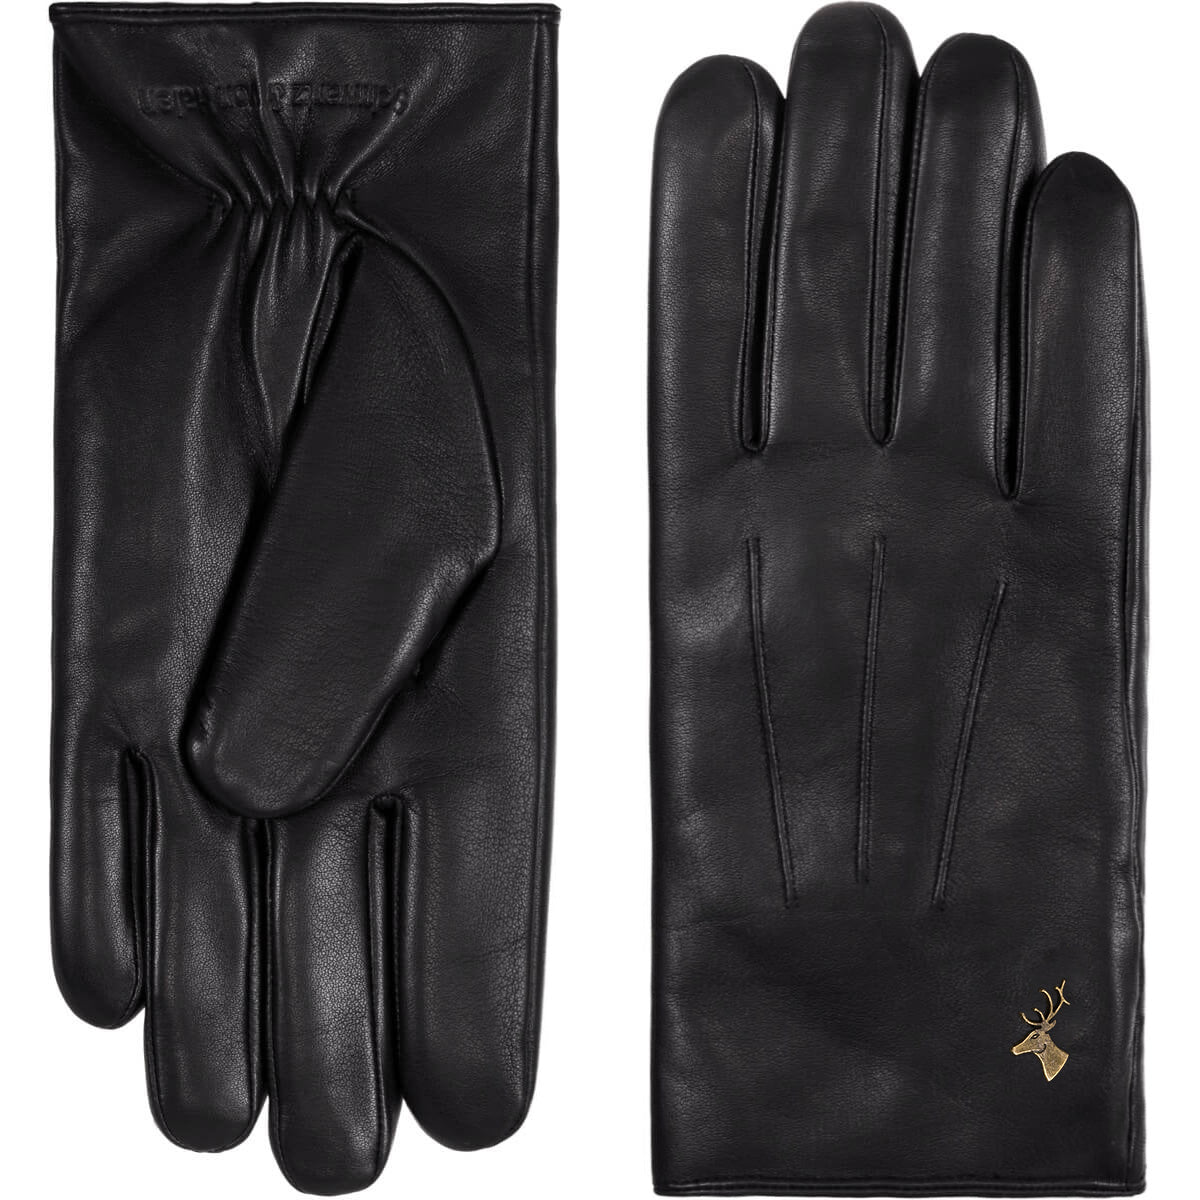 Leather Gloves Men Black Al Capone - Schwartz & von Halen® - Premium Leather Gloves - 2